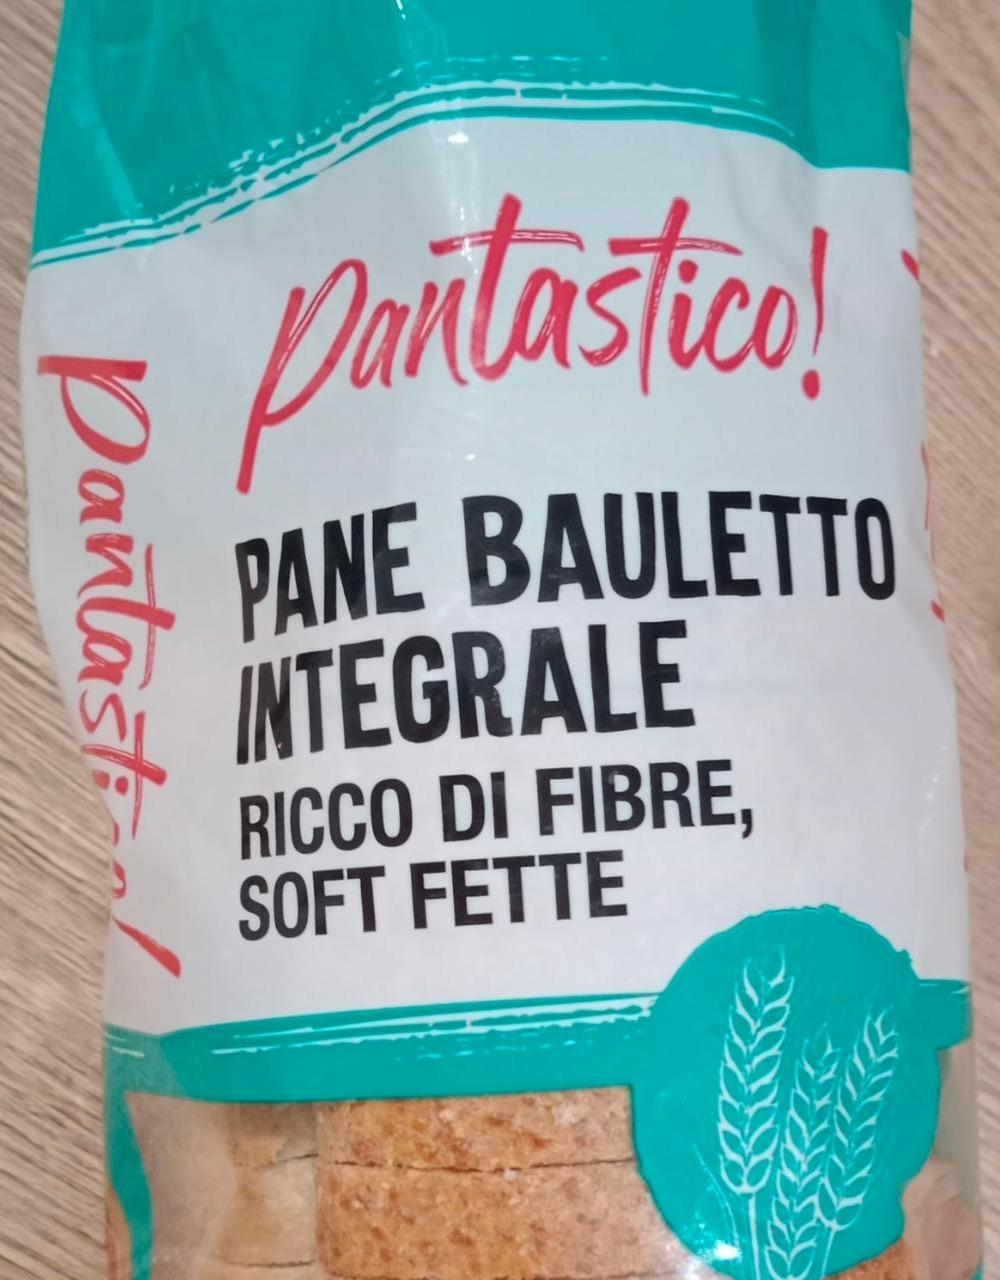 Fotografie - Pane Bauletto Integrale Ricco di fibre, soft fette Pantastico!